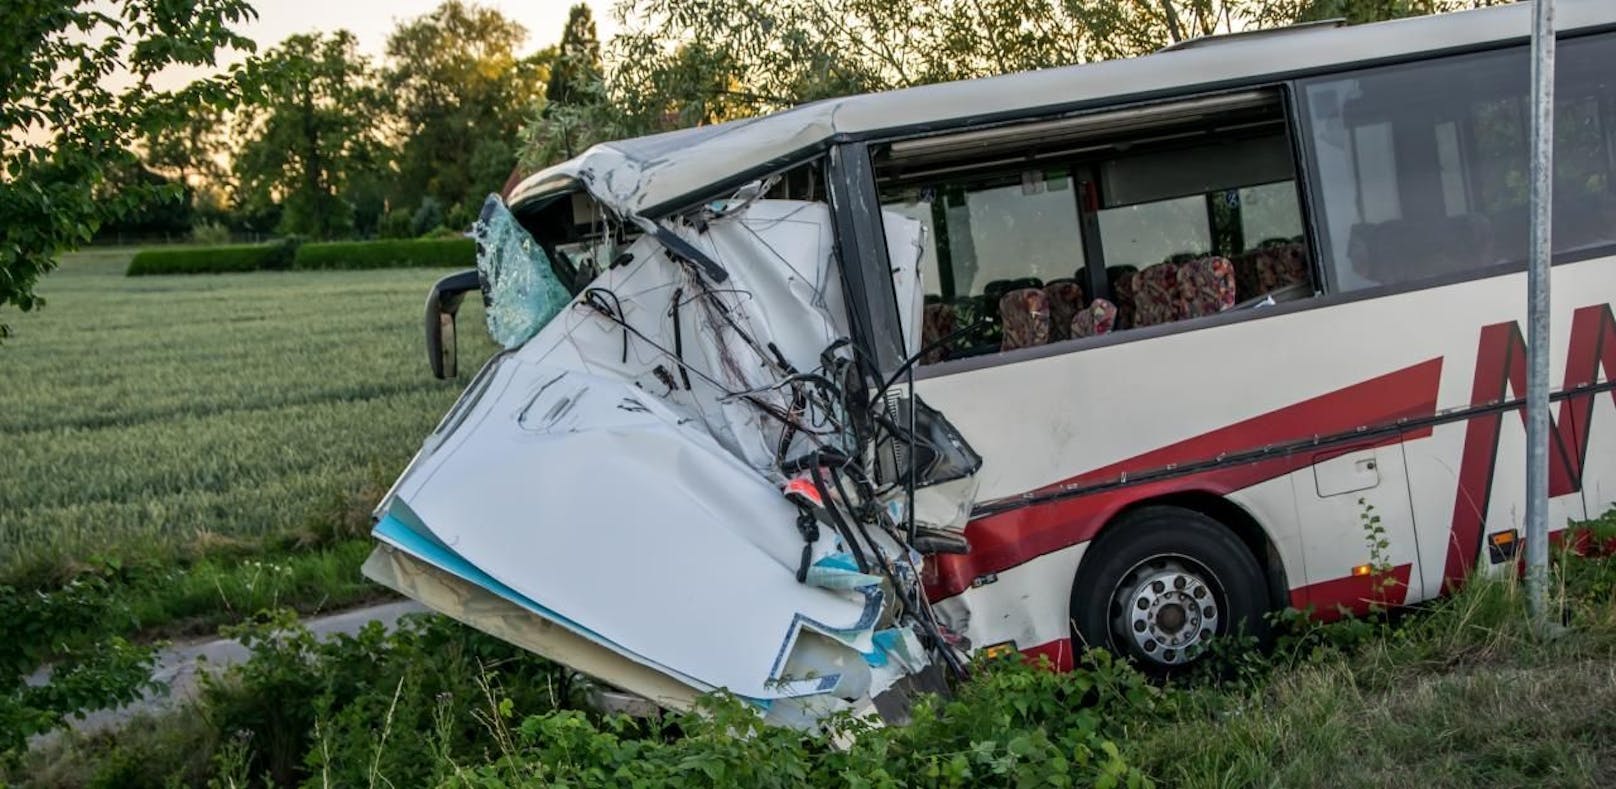 Bus mit Kindern kracht in Rettungswagen – 1 Toter